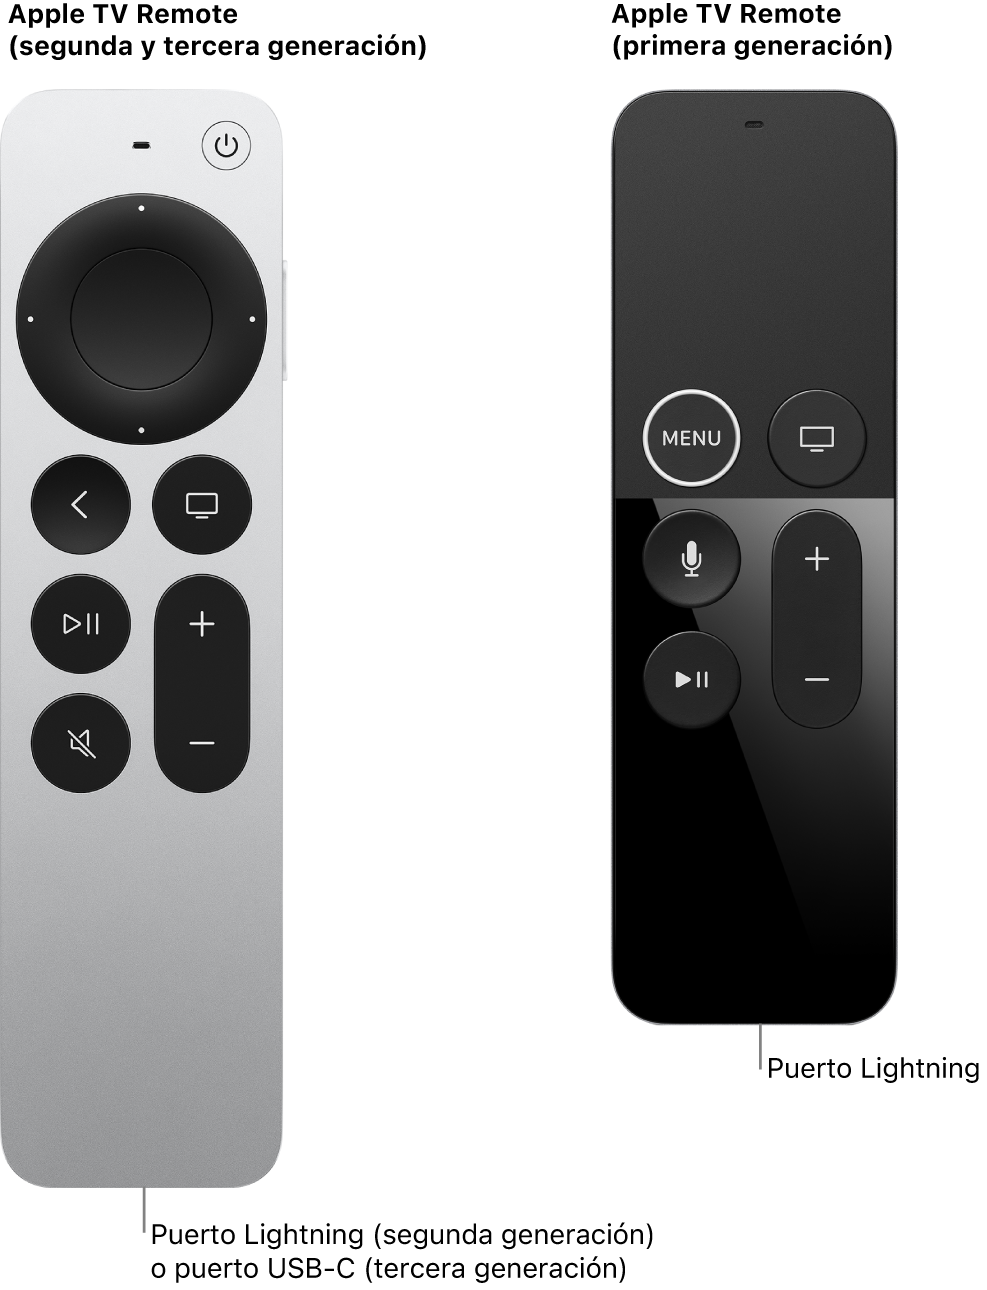 Imagen del Apple TV Remote (segunda generación) y del Apple TV Remote (primera generación) mostrando el puerto Lightning